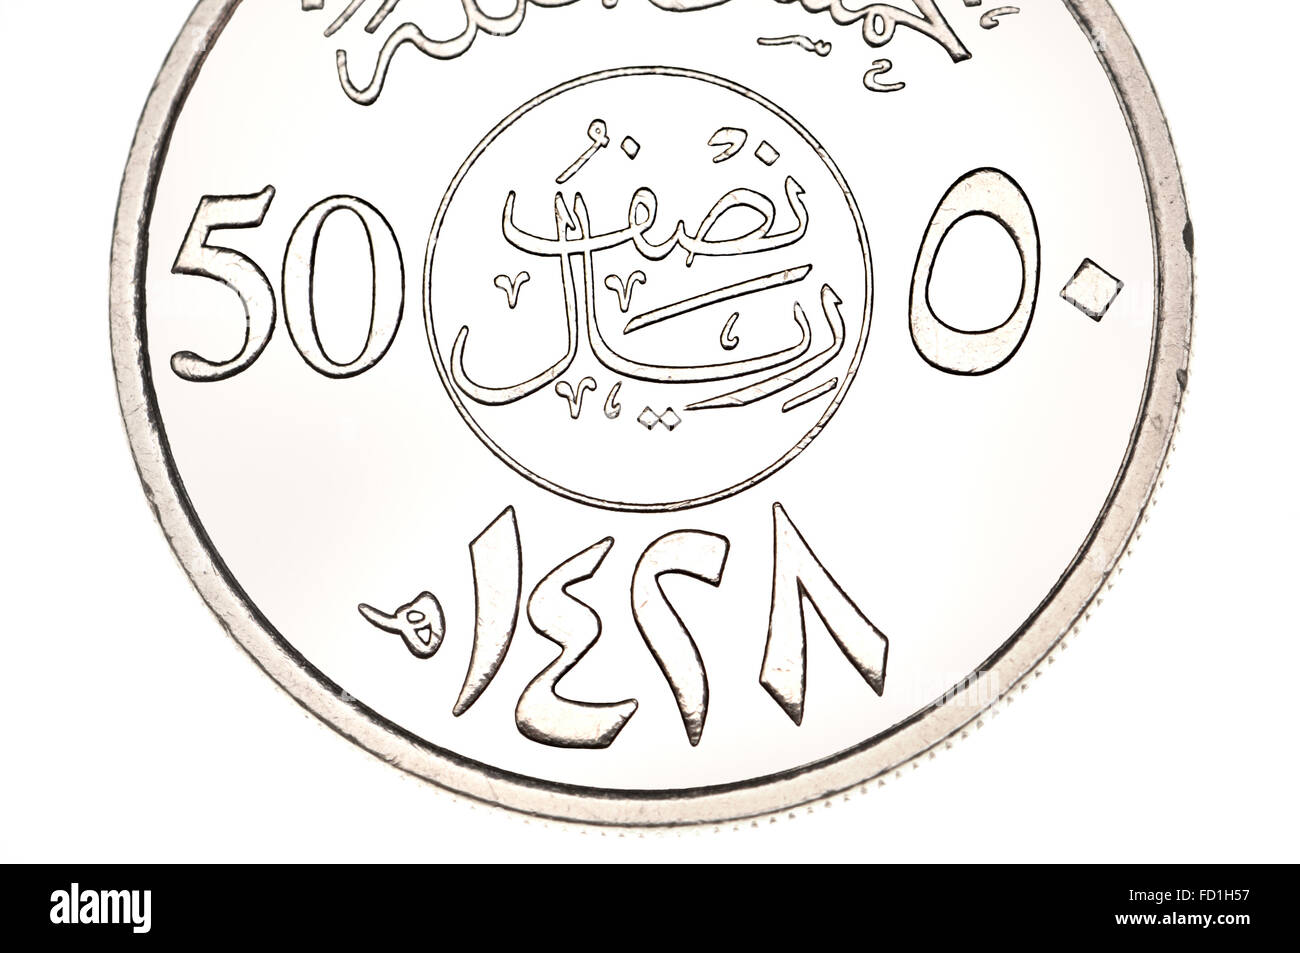 50 Halala Coin of Saudi Arabia zeigt arabische Schrift und Symbole (Cupro-Nickel) und Datum 1428 (2007) im islamischen Kalender. Stockfoto